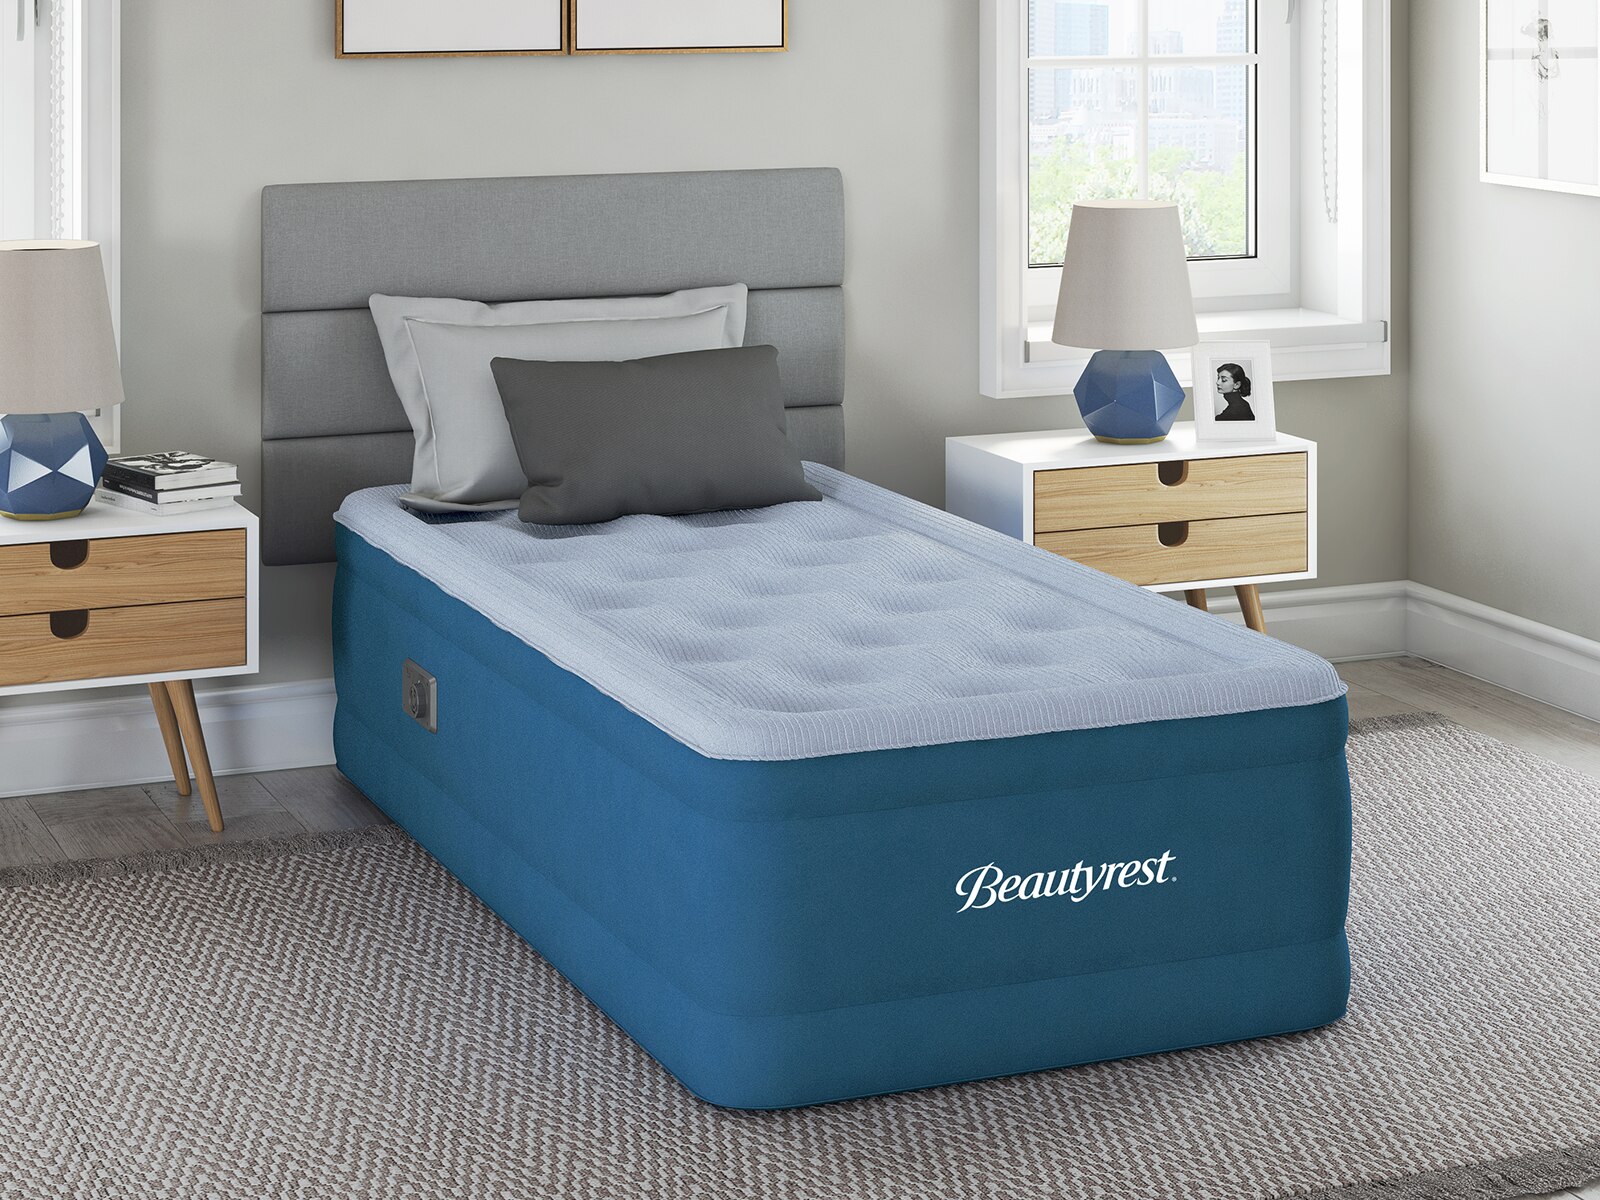 beautyrest comfort plus 17 air mattress